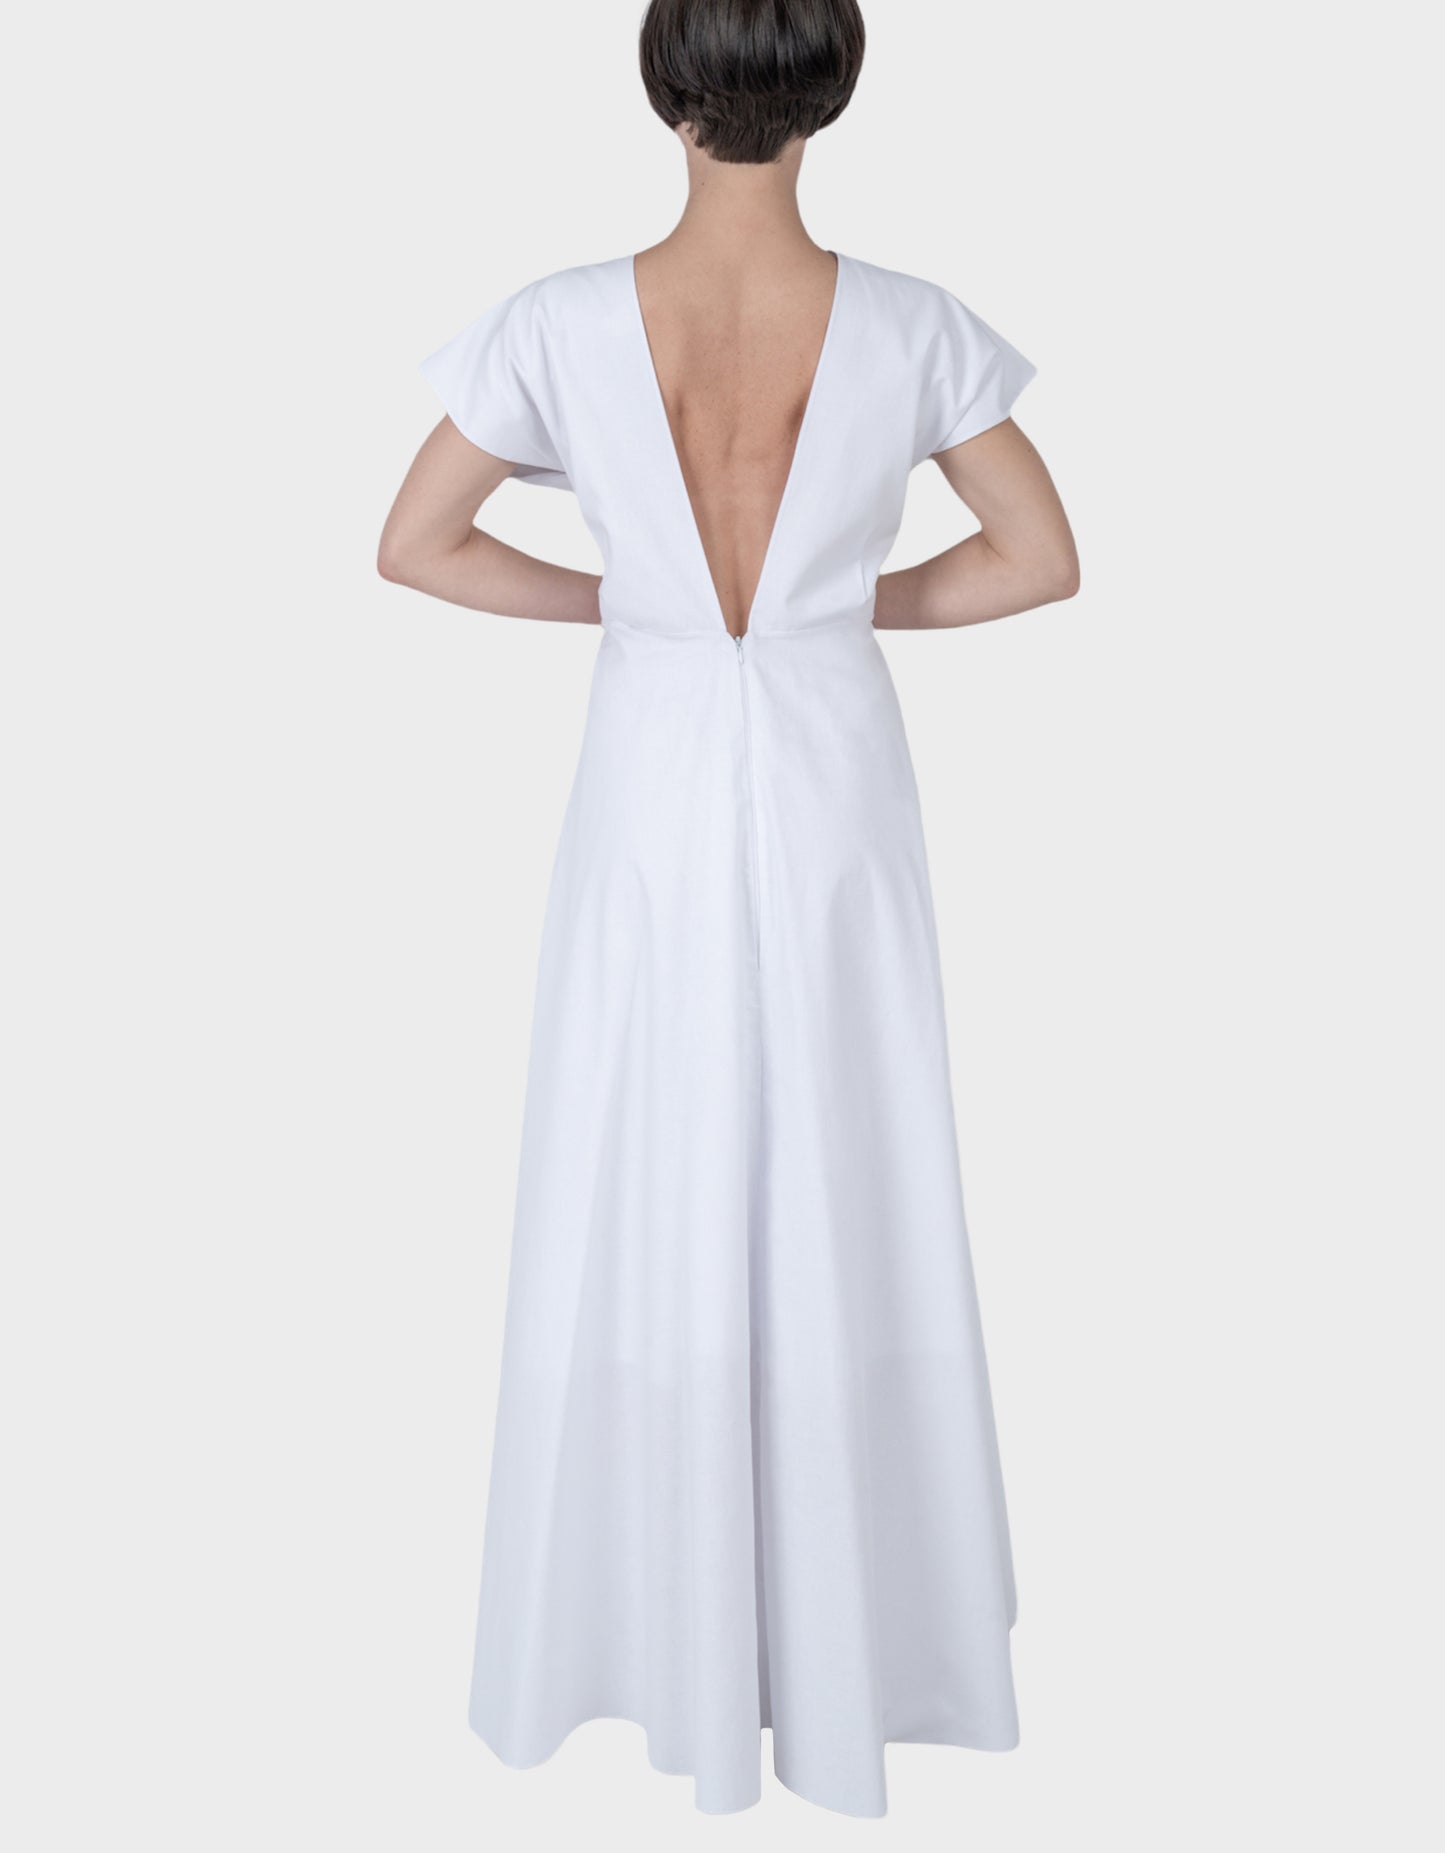 Aegle Dress - White Chalk